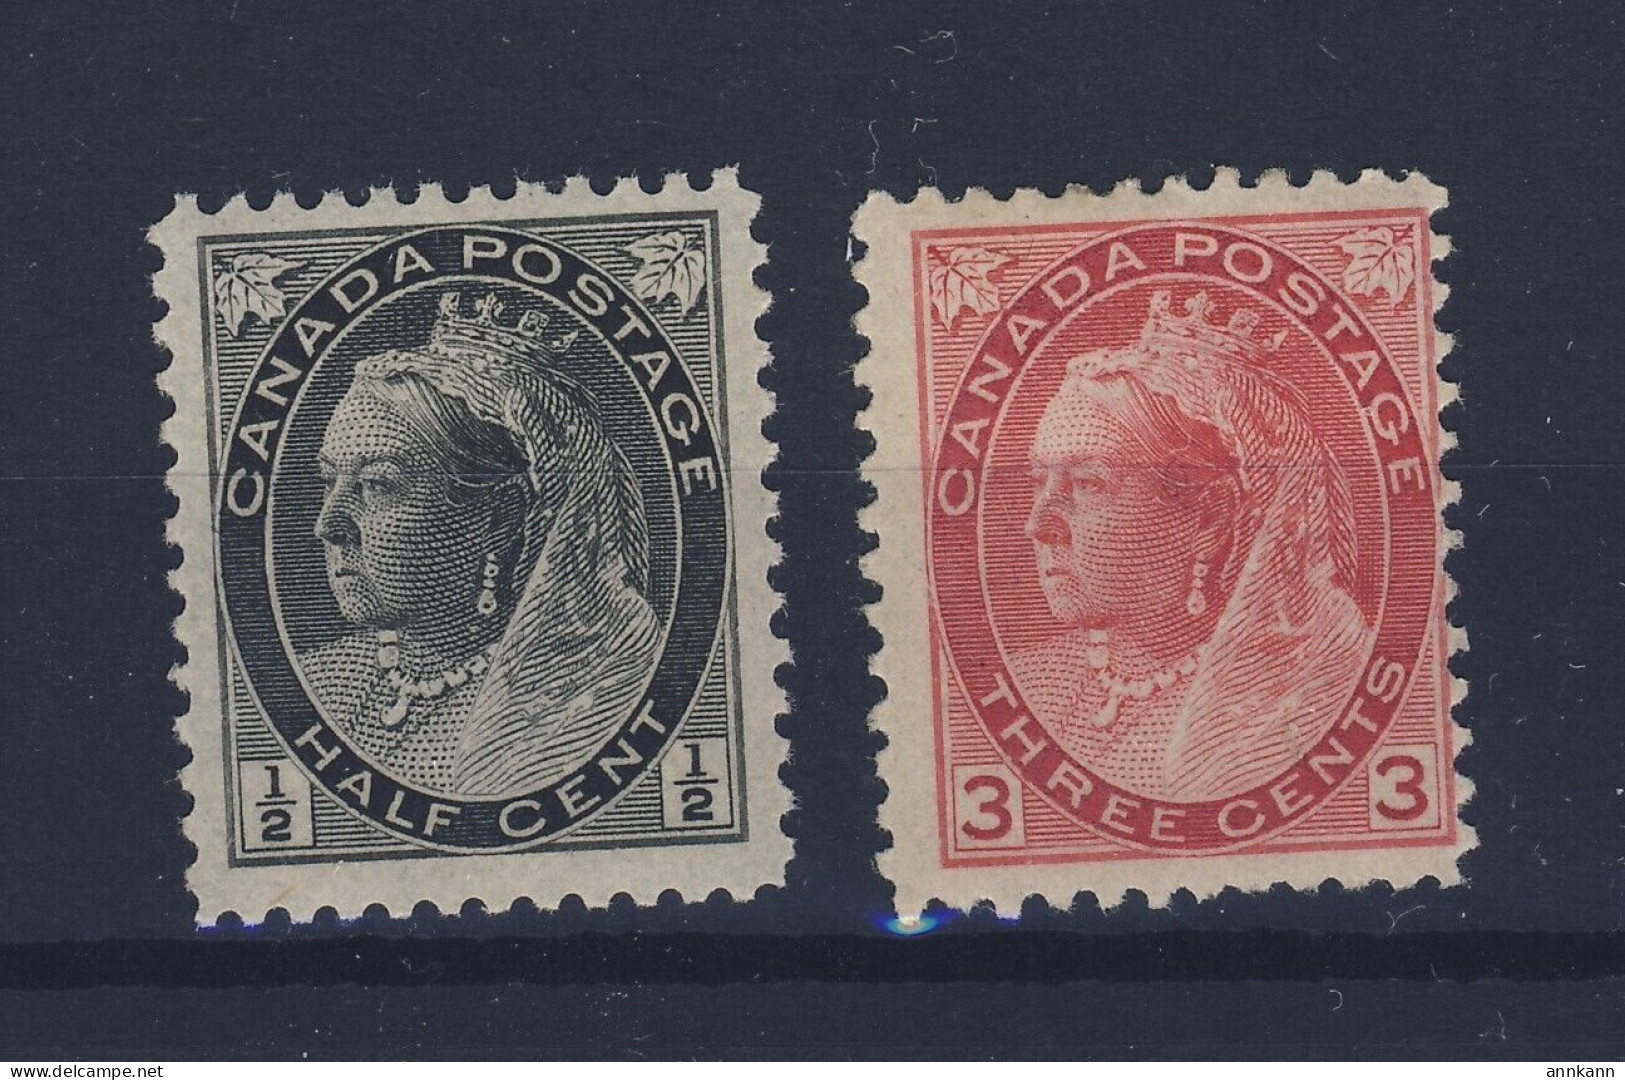 2x Canada Victoria Numeral Stamps; #74-1/2c MNH F/VF #78-3c MH F GV = $65.00 - Nuevos